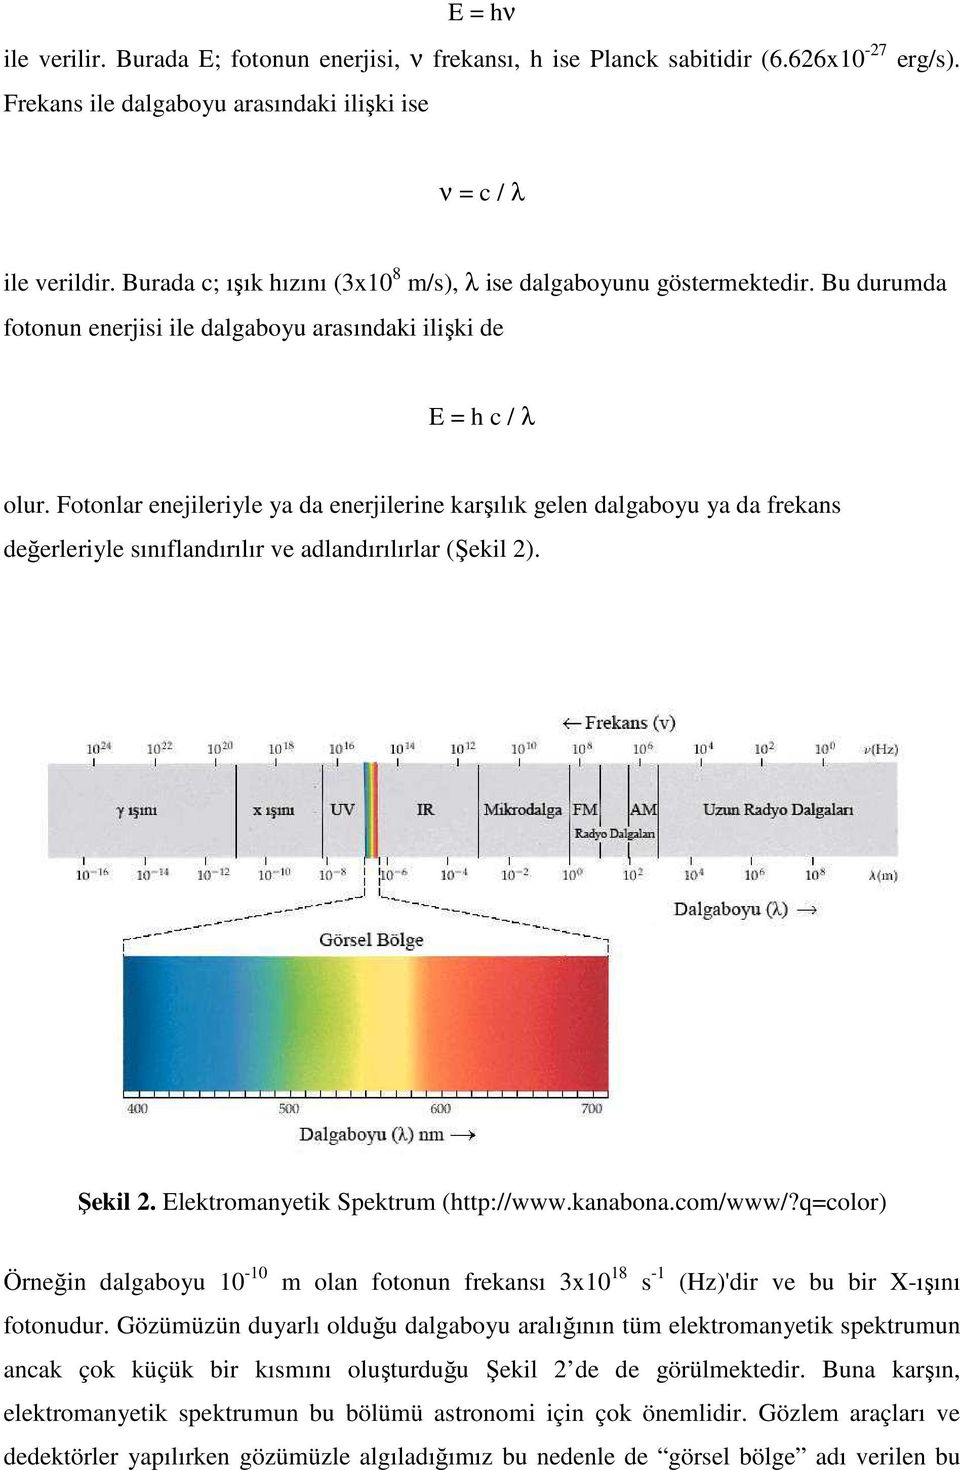 Fotonlar enejileriyle ya da enerjilerine karşılık gelen dalgaboyu ya da frekans değerleriyle sınıflandırılır ve adlandırılırlar (Şekil 2). Şekil 2. Elektromanyetik Spektrum (http://www.kanabona.